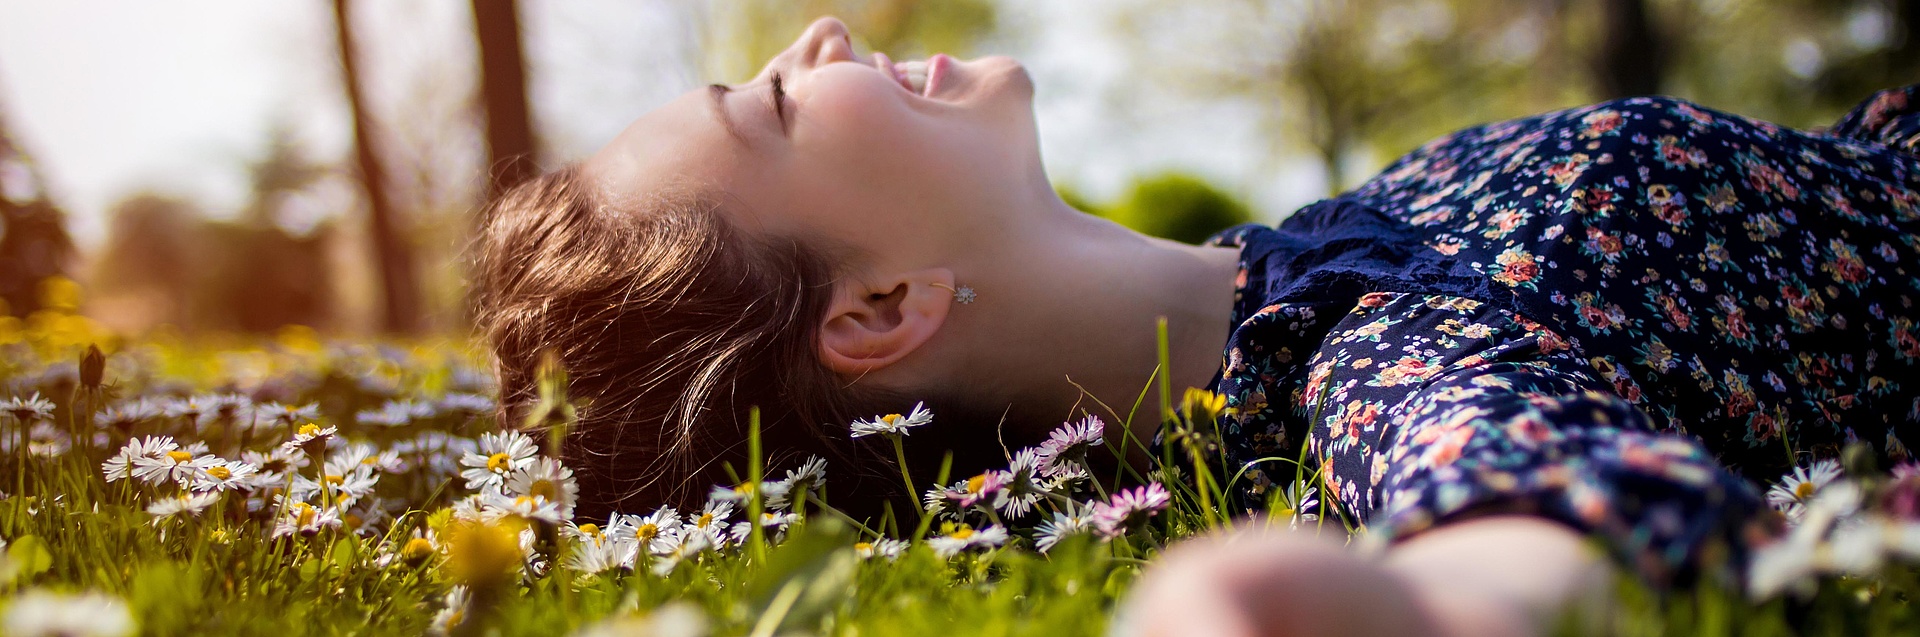 Frau liegt entspannt auf einer Blumenwiese